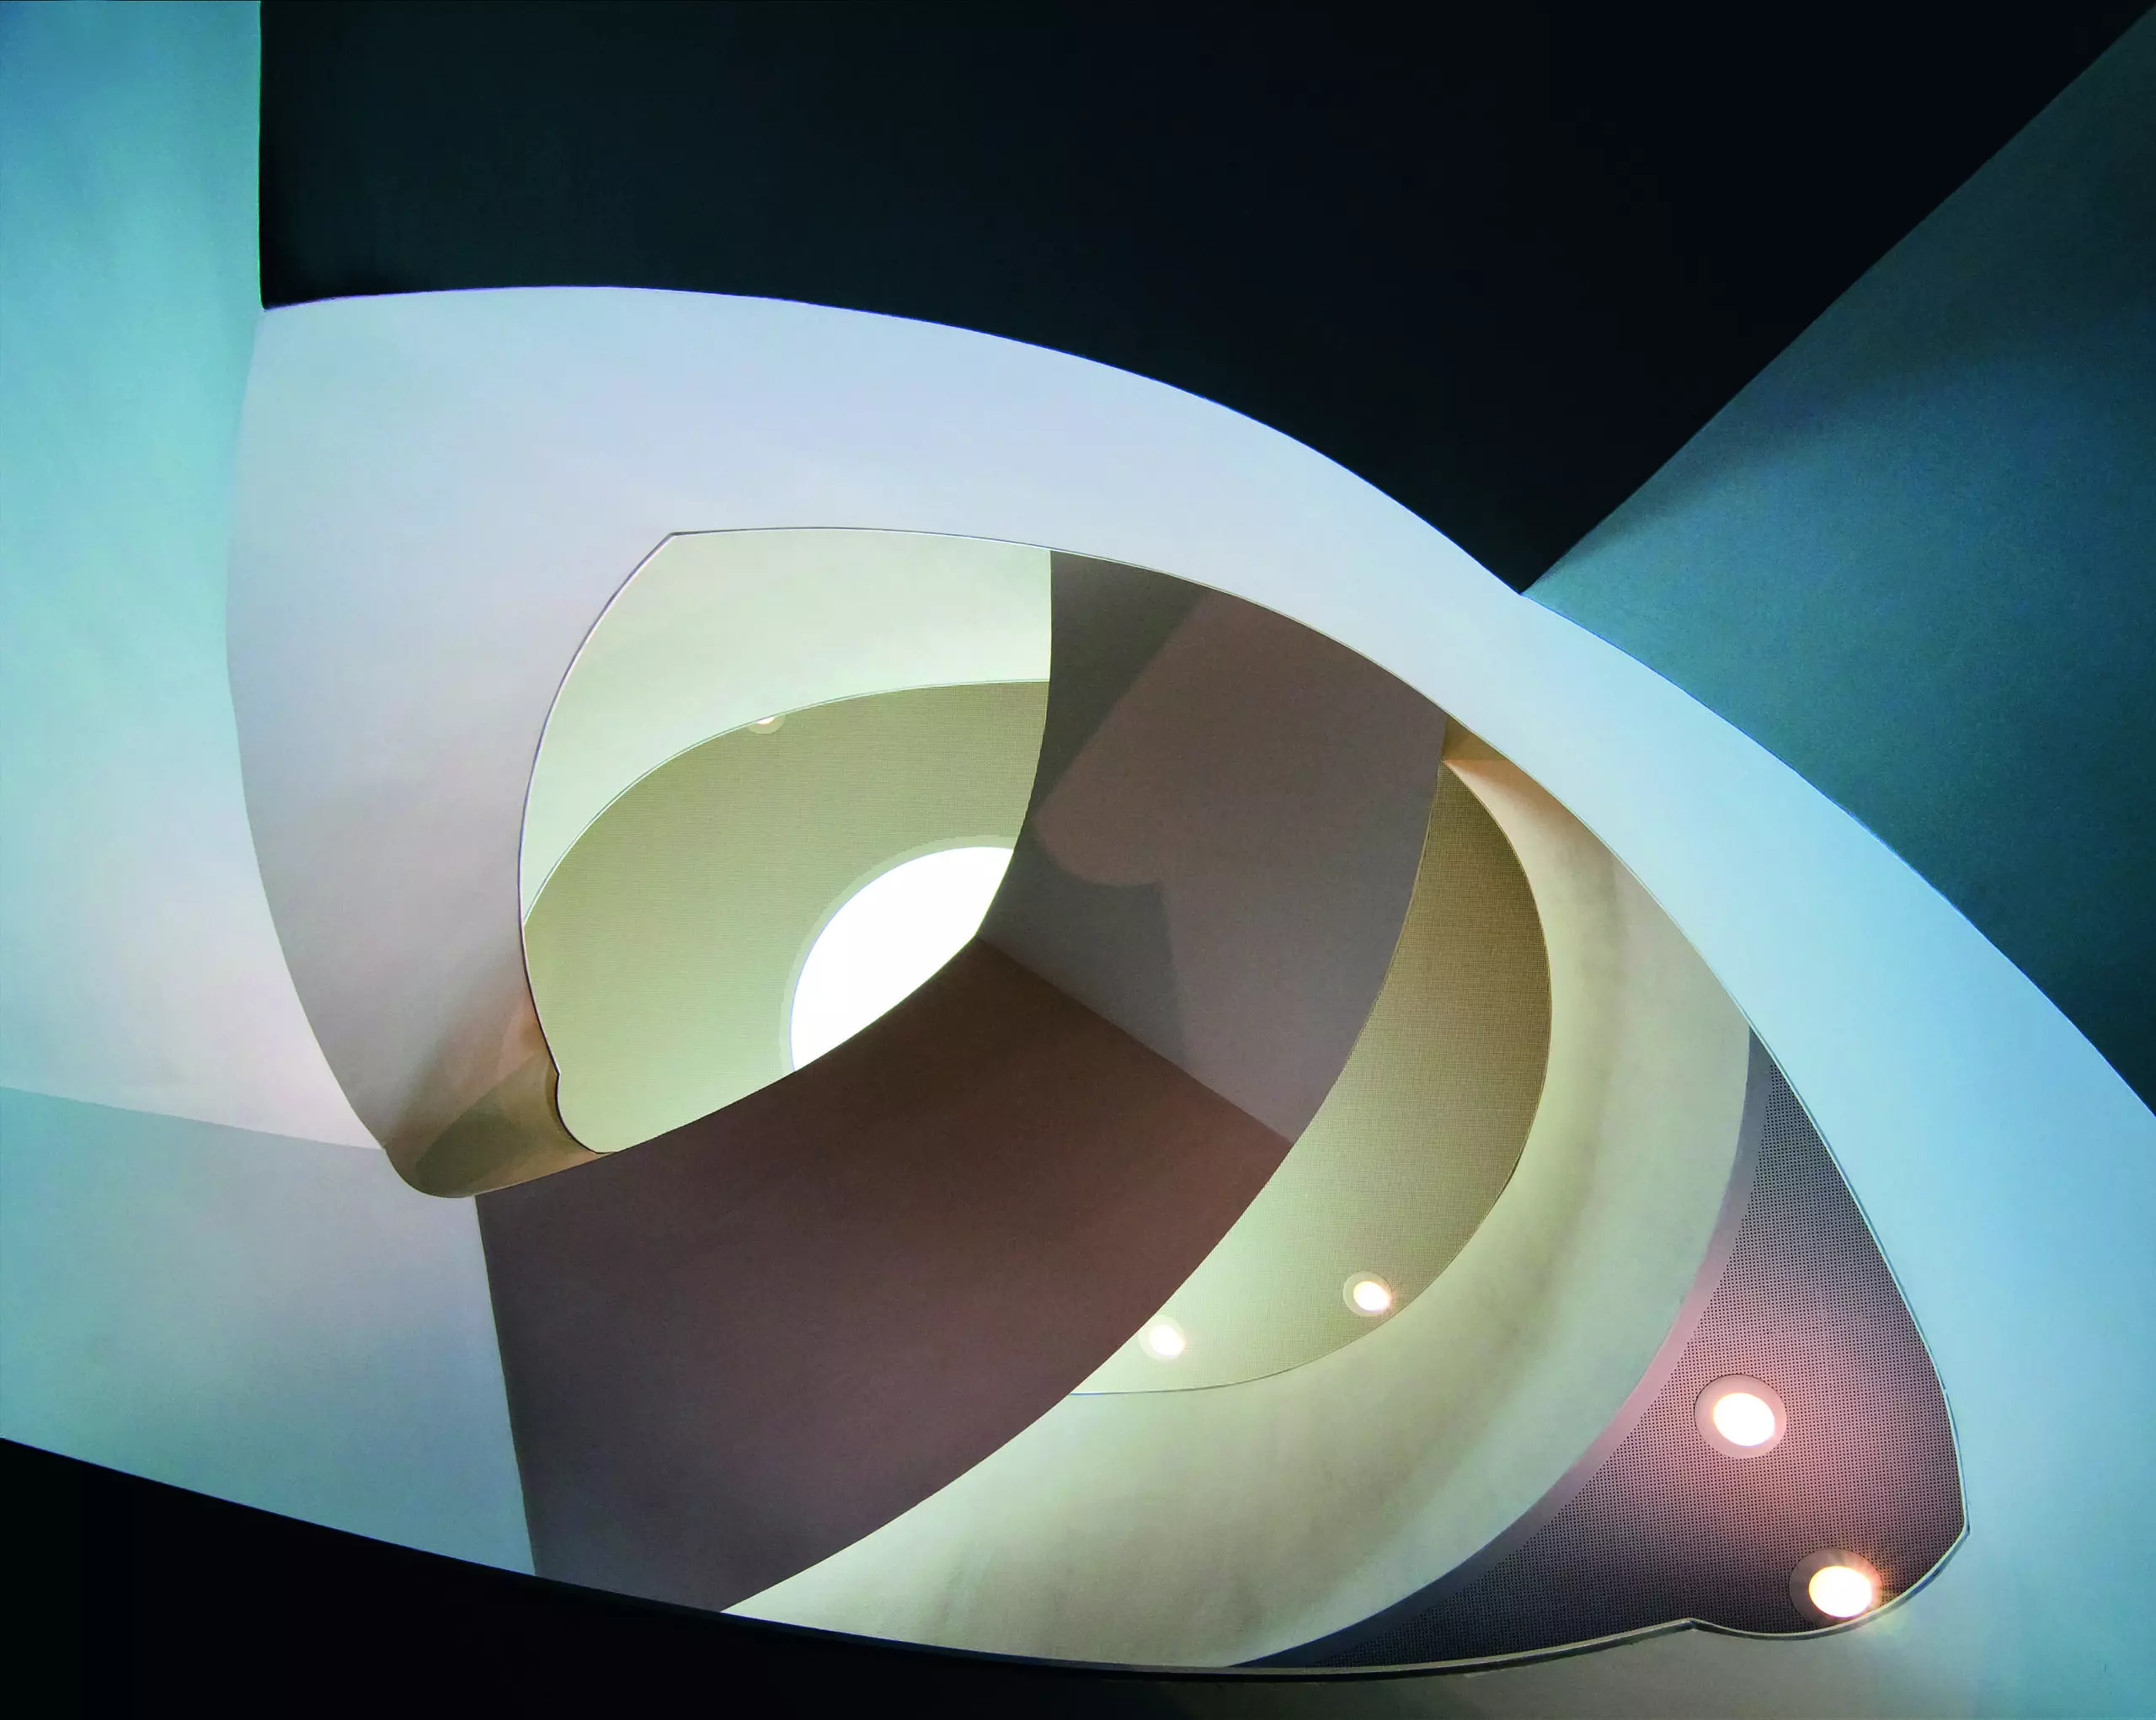 Wandbild (5223) Top Light by Henk van Maastricht präsentiert: Kreatives,Details und Strukturen,Architektur,Abstrakt,Häuser,Sonstige Architektur,Treppe,Architekturdetails